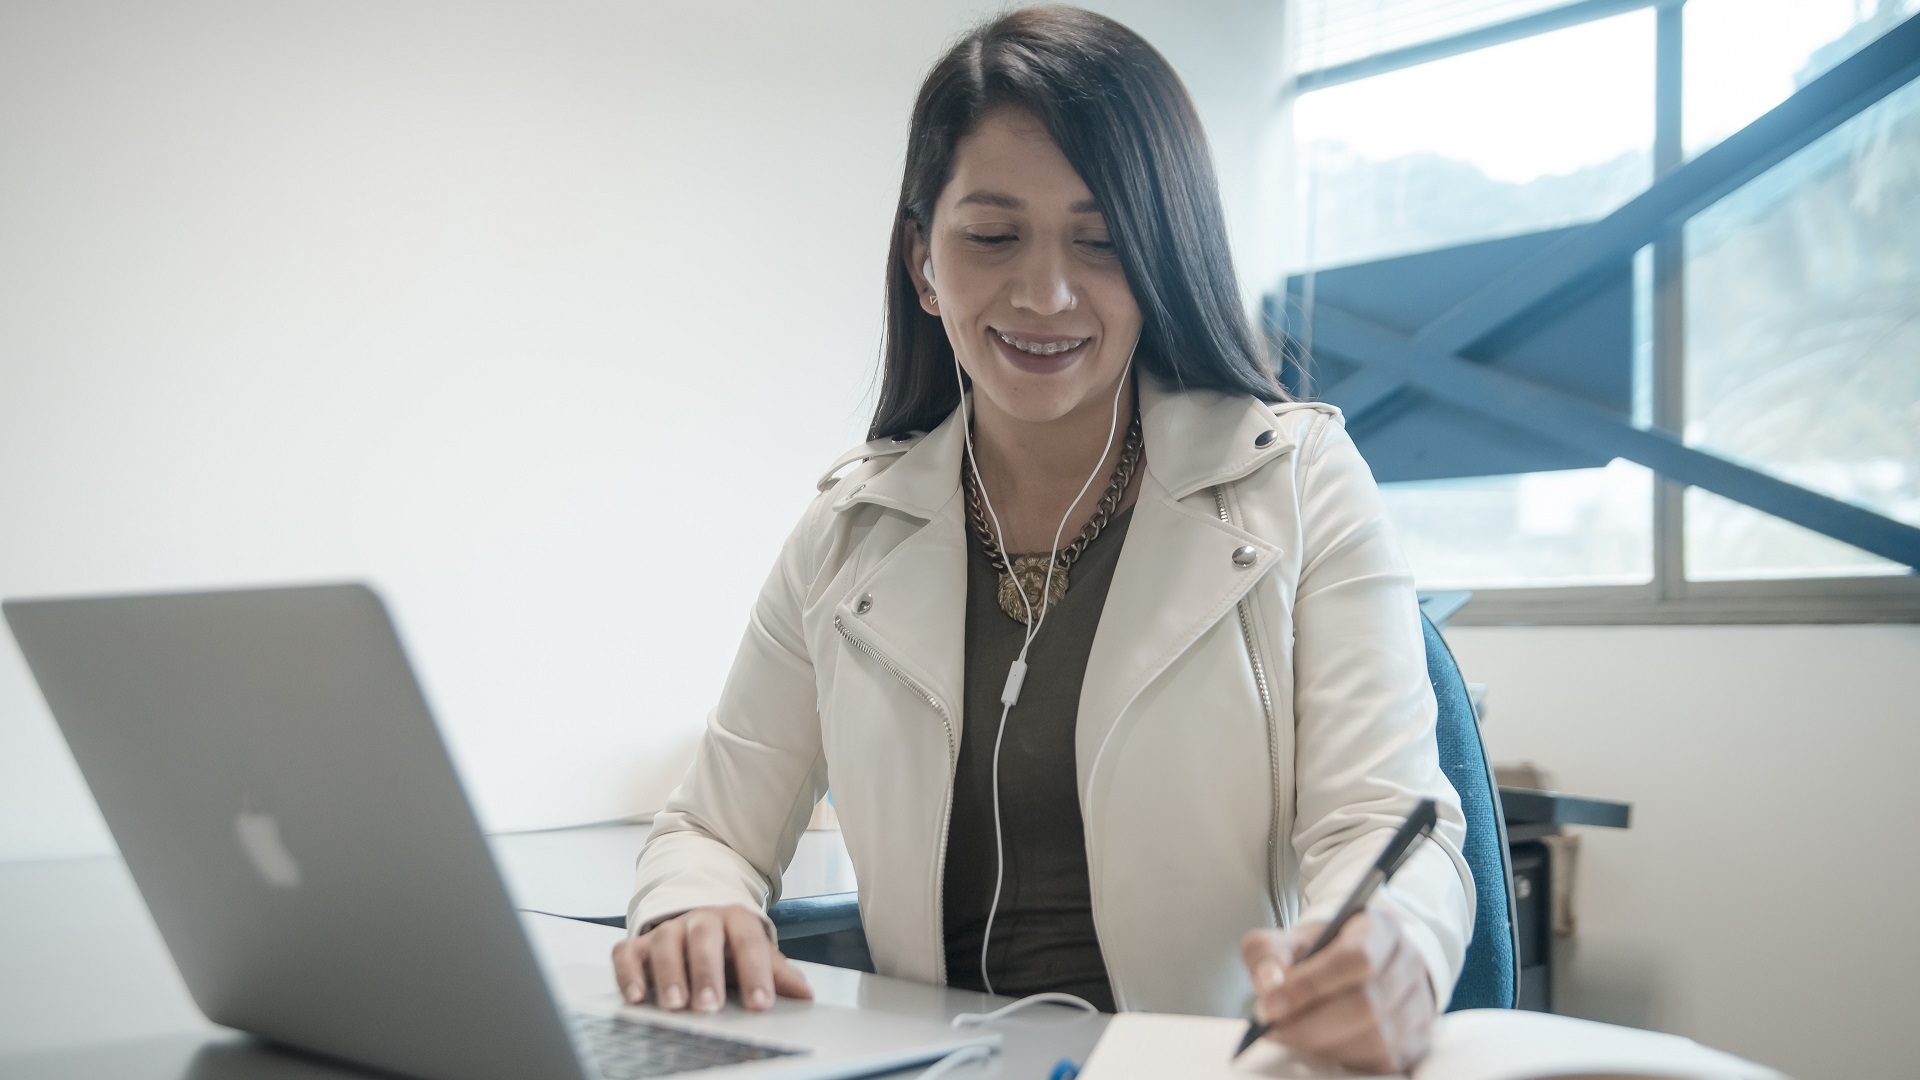  Mujer sonríe, frente a un computador, mientras escribe en una agenda lo que investigó en Internet.